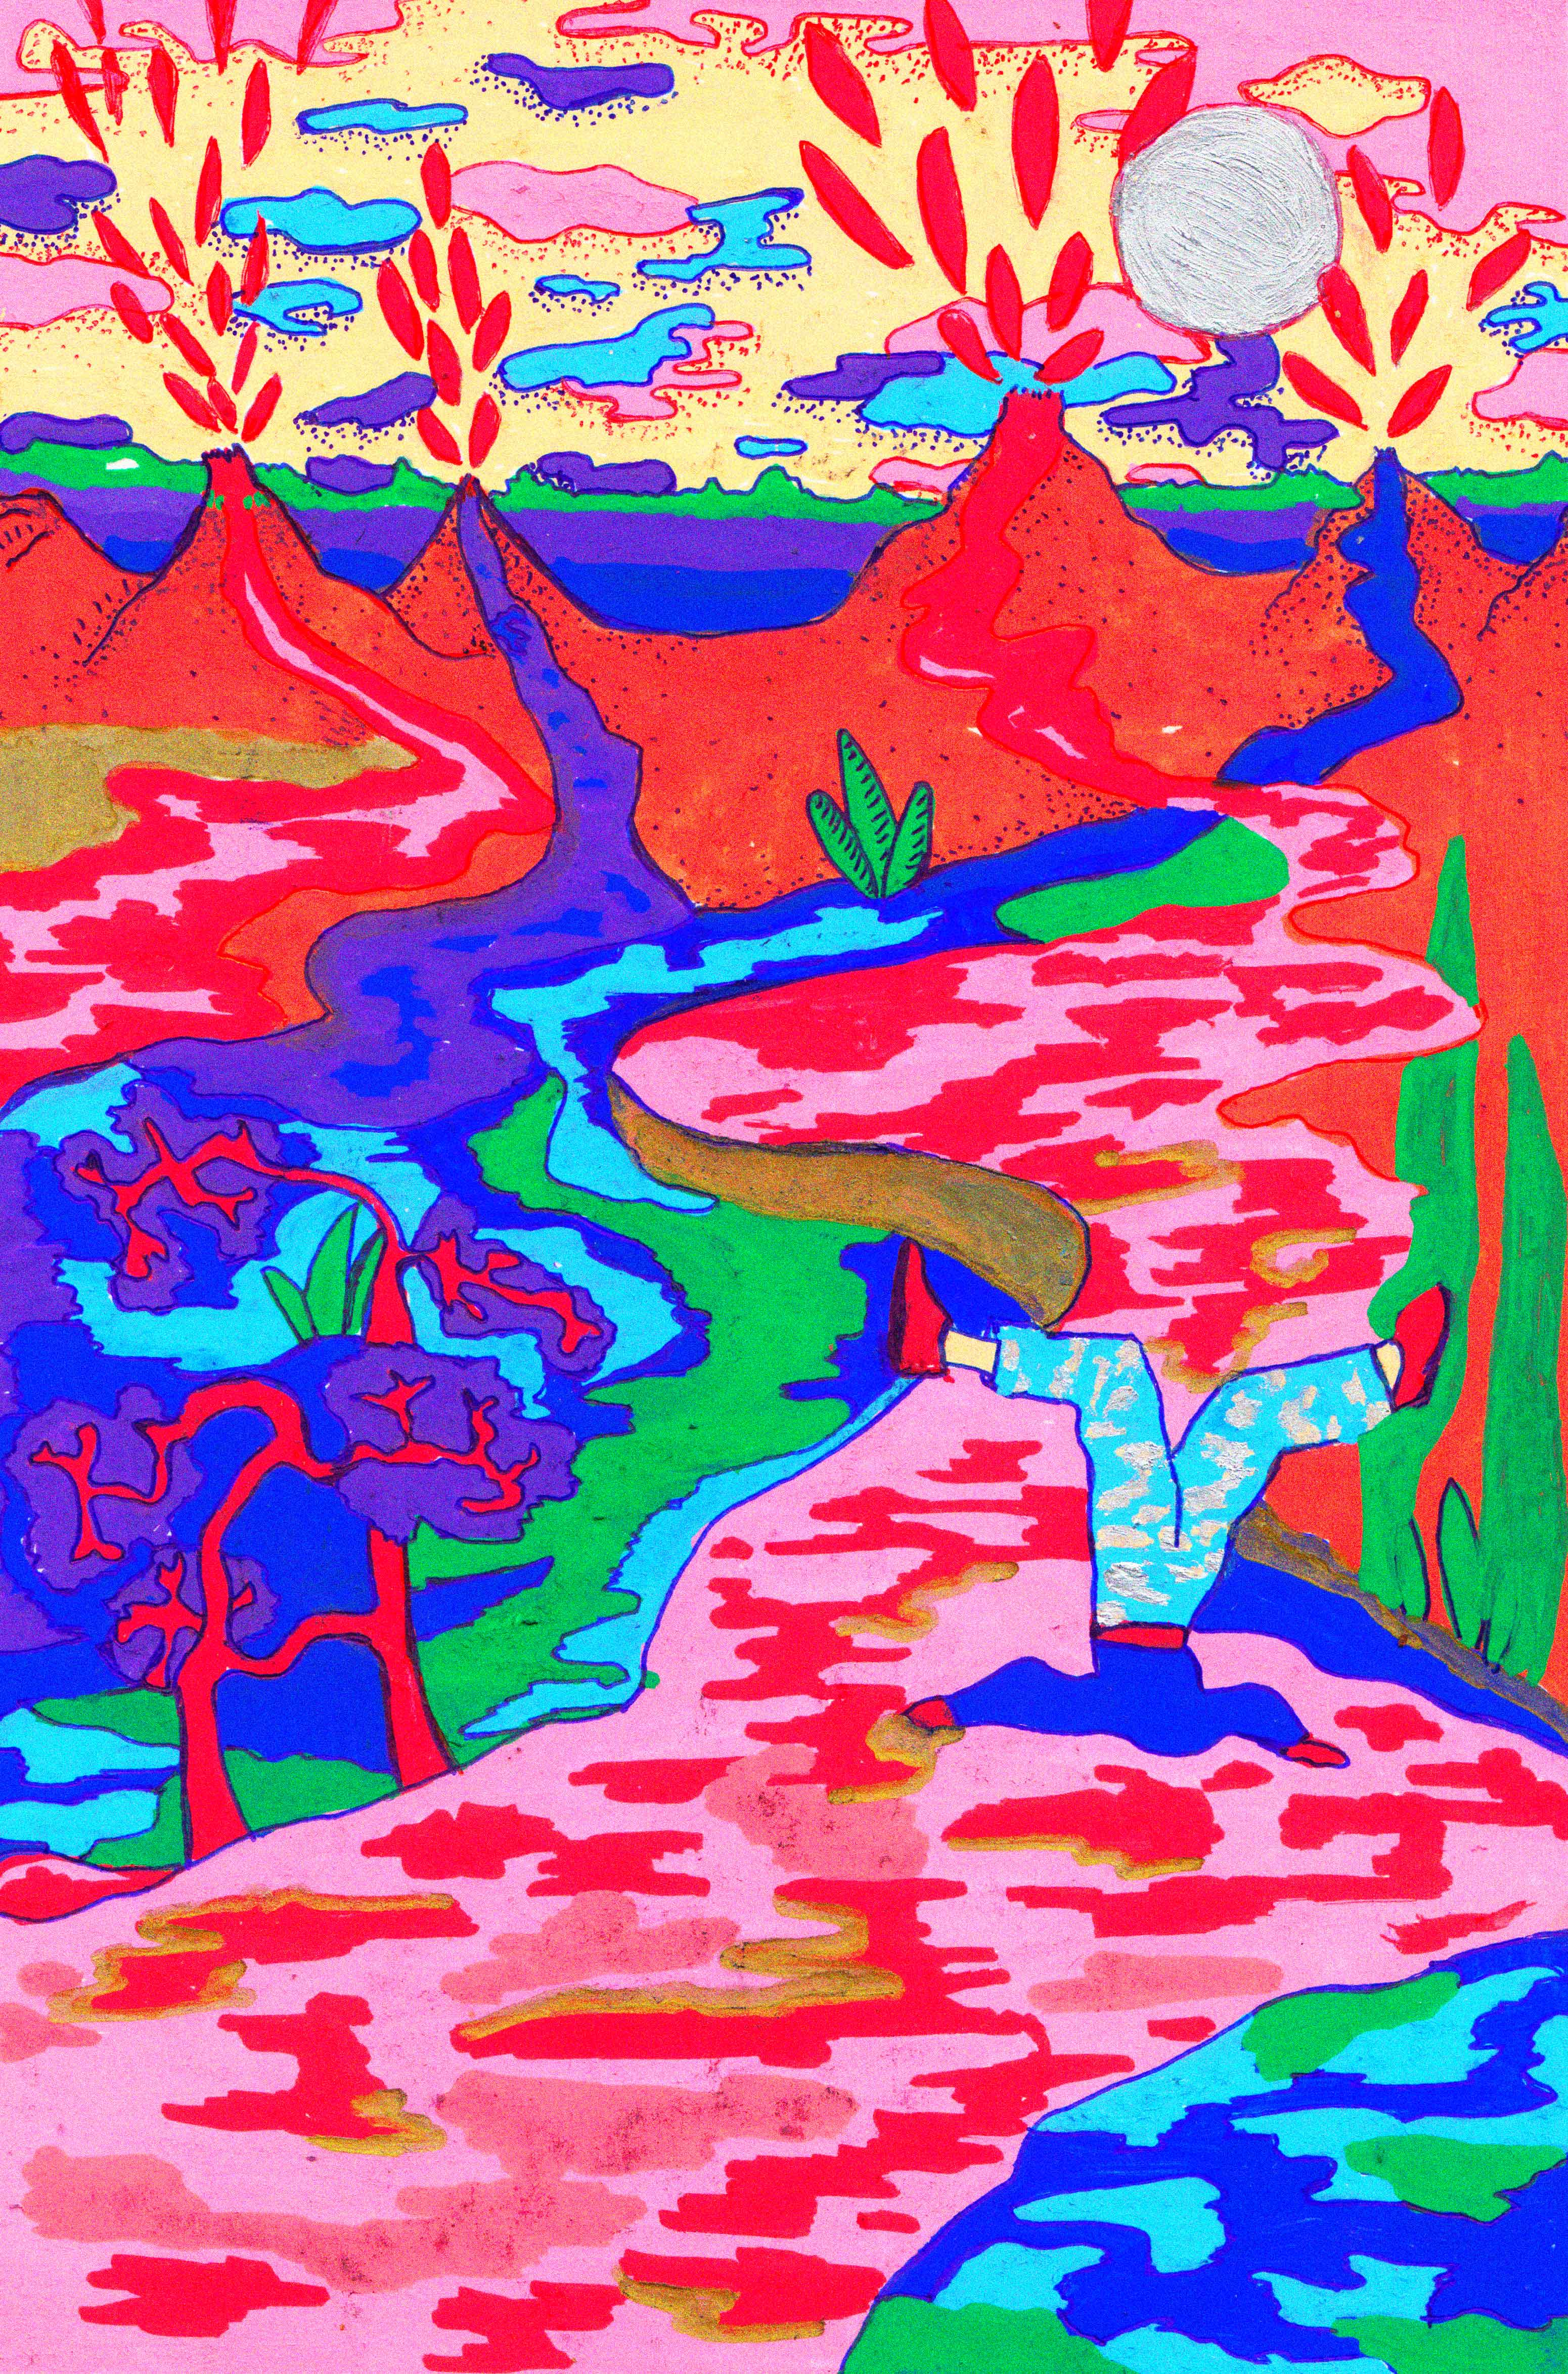 La tête dans l'eau, peinture à la gouache et crayons de couleurs, 21 x 29,7 cm